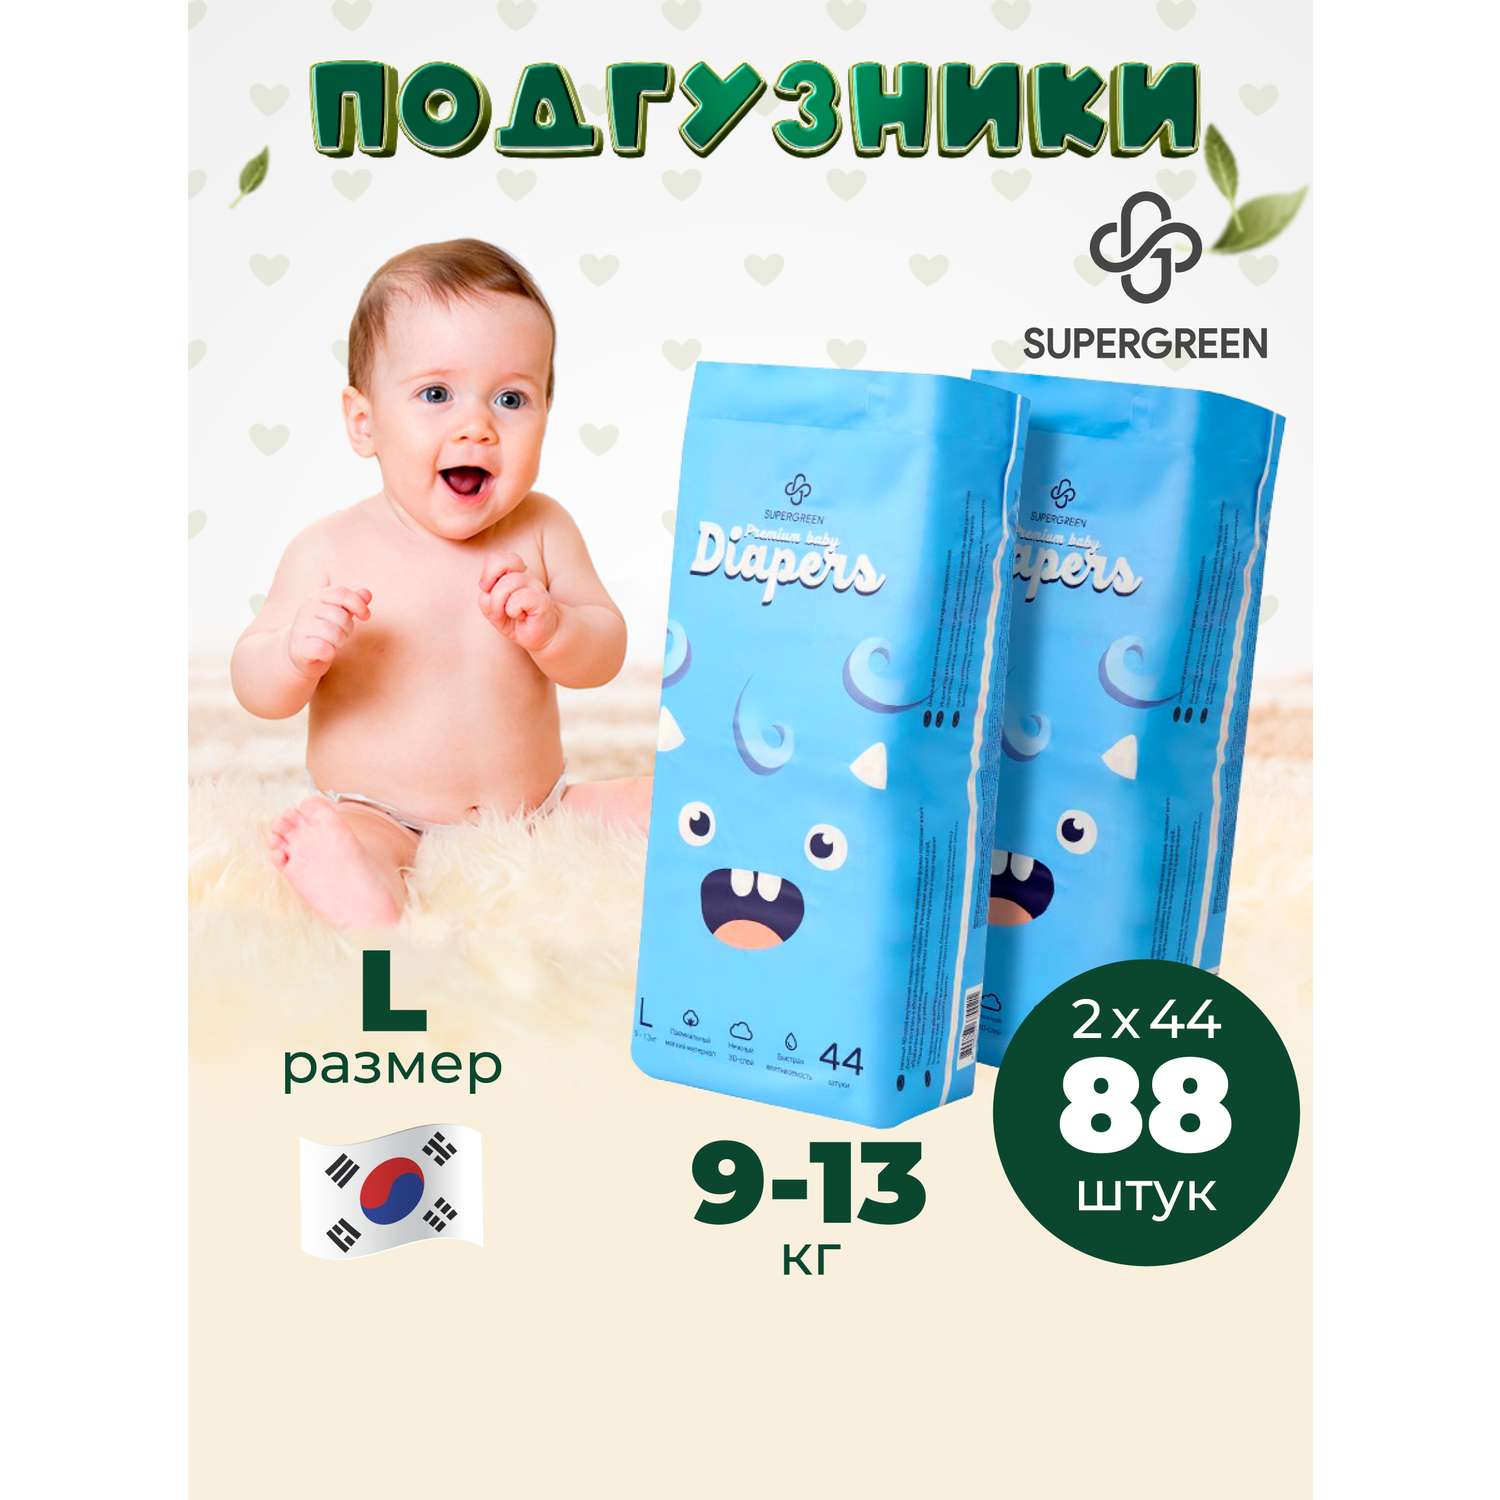 Подгузники SUPERGREEN Premium baby Diapers L размер 2 упаковки по 44 шт 9-13 кг ультрамягкие - фото 1